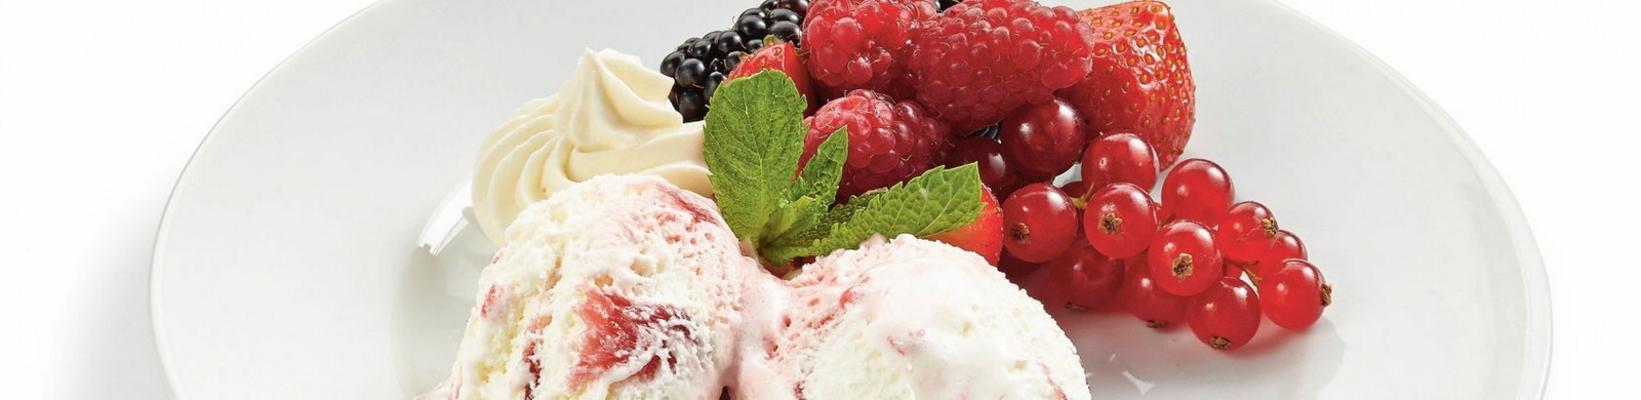 icecream ice cream with red fruit